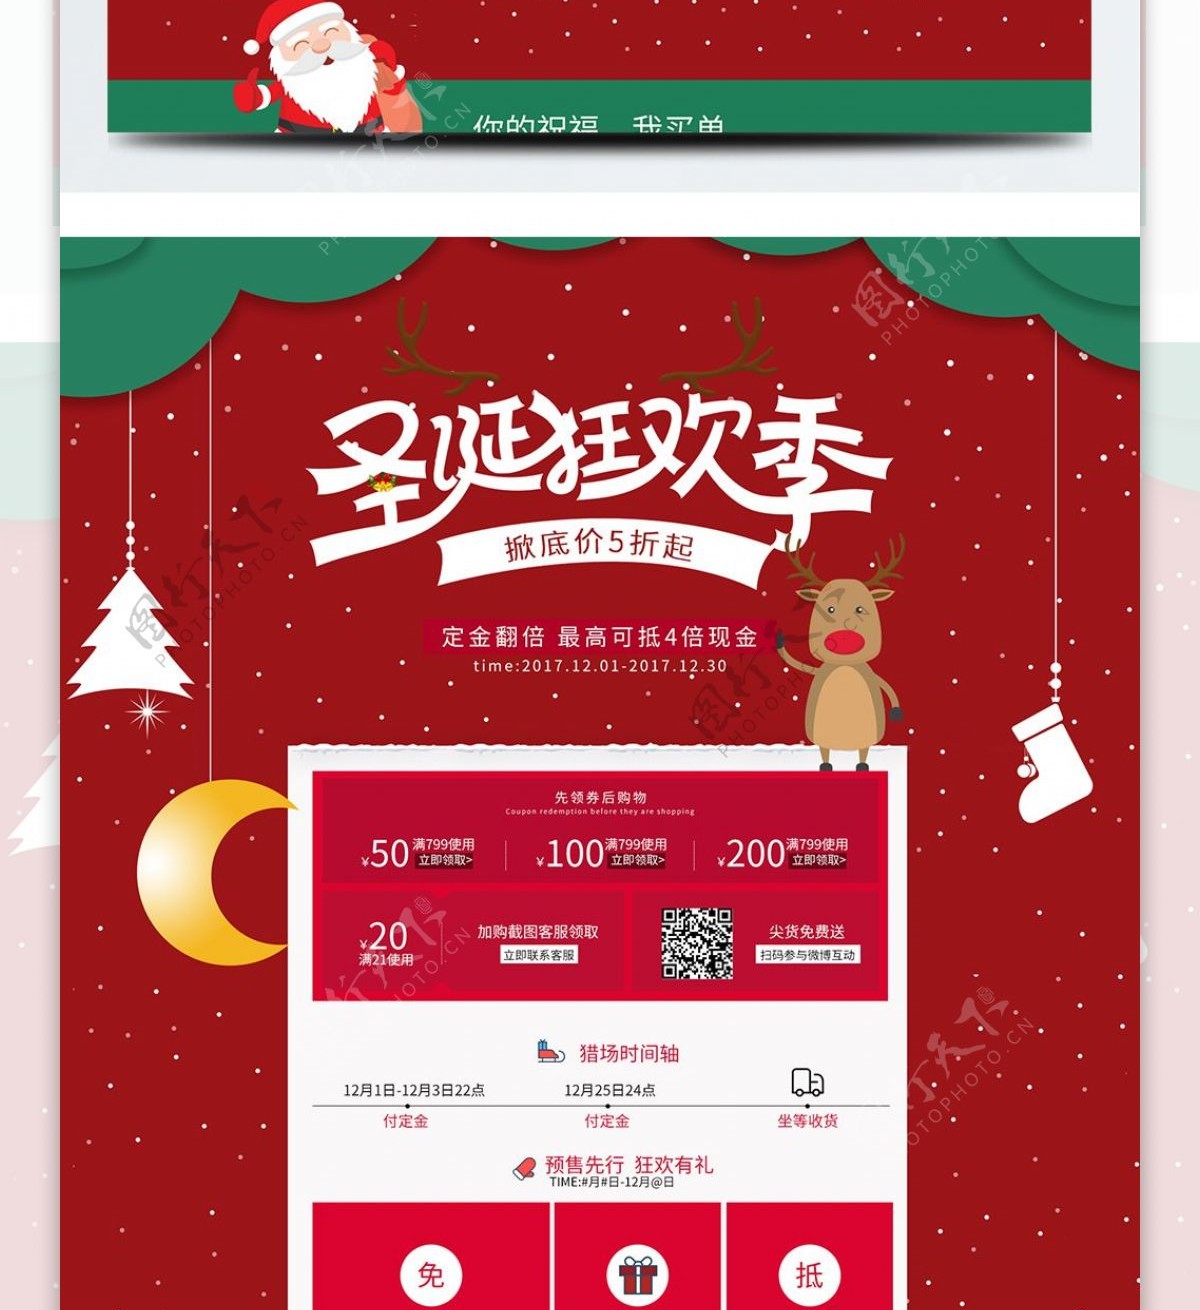 圣诞狂欢季红色促销淘宝天猫首页促销模板